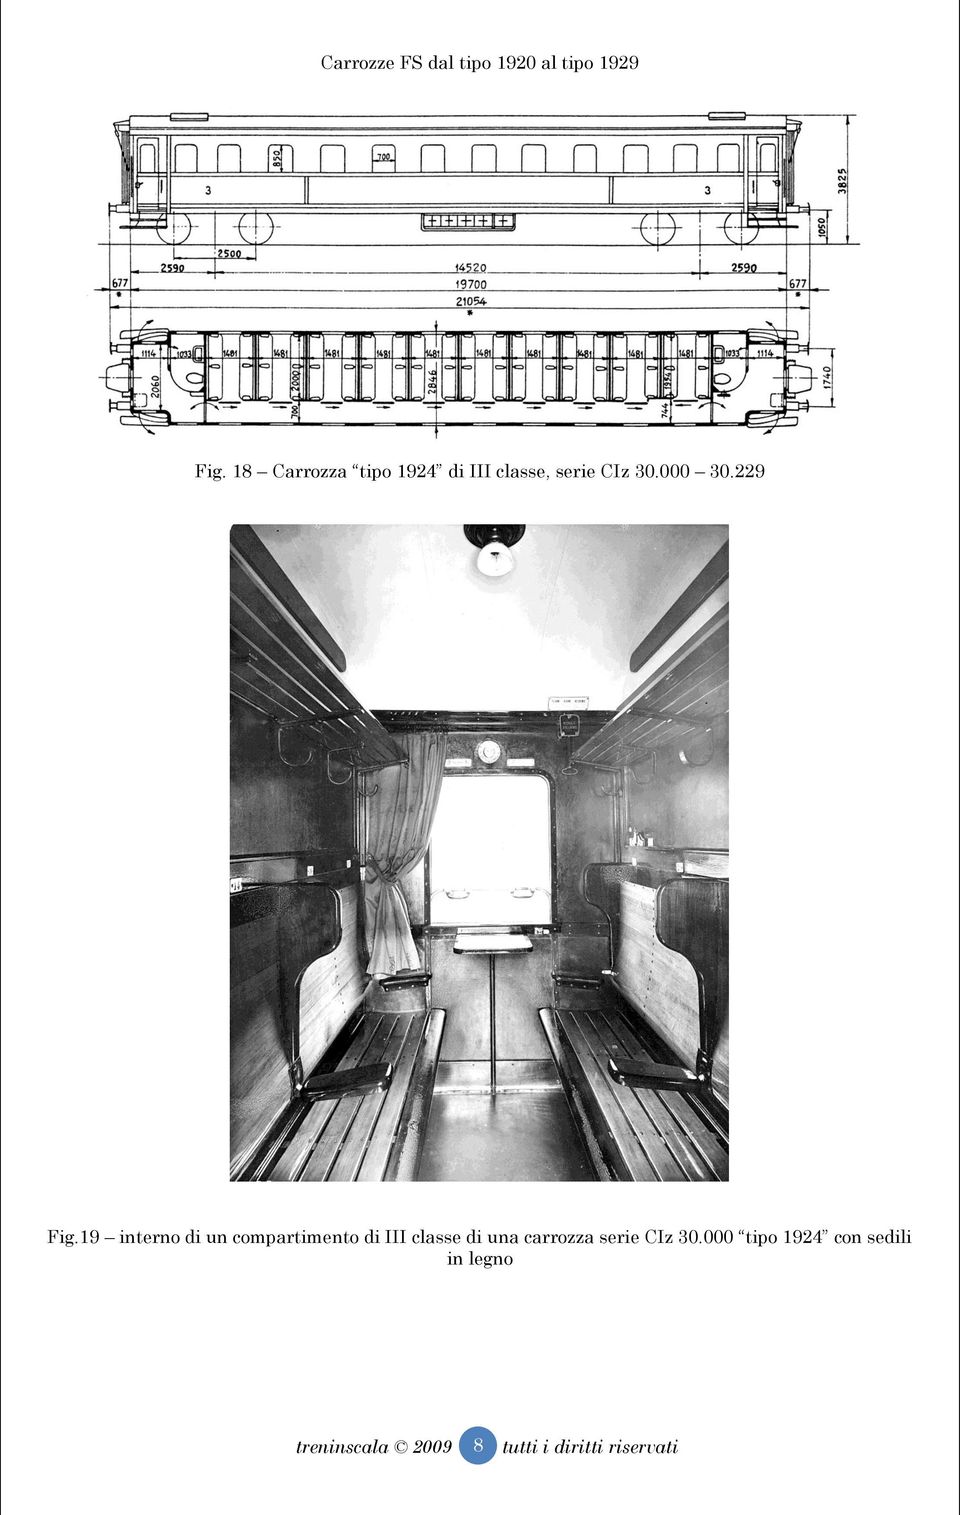 19 interno di un compartimento di III classe